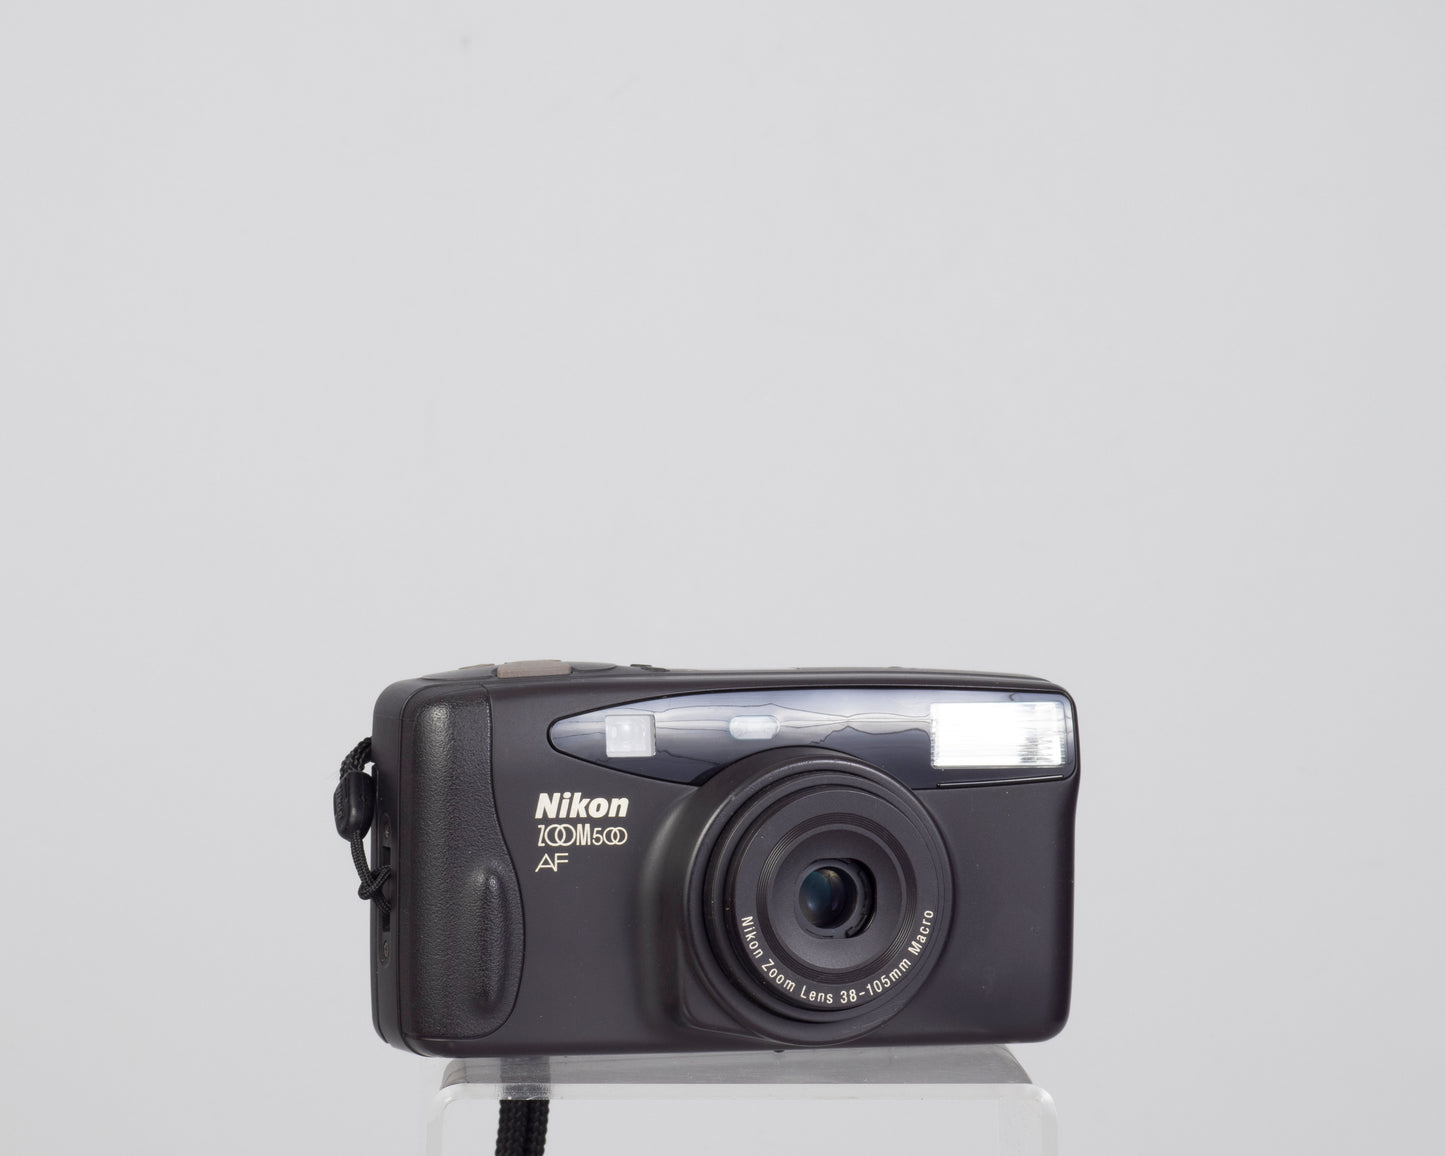 The Nikon Zoom 500AF 35mm camera